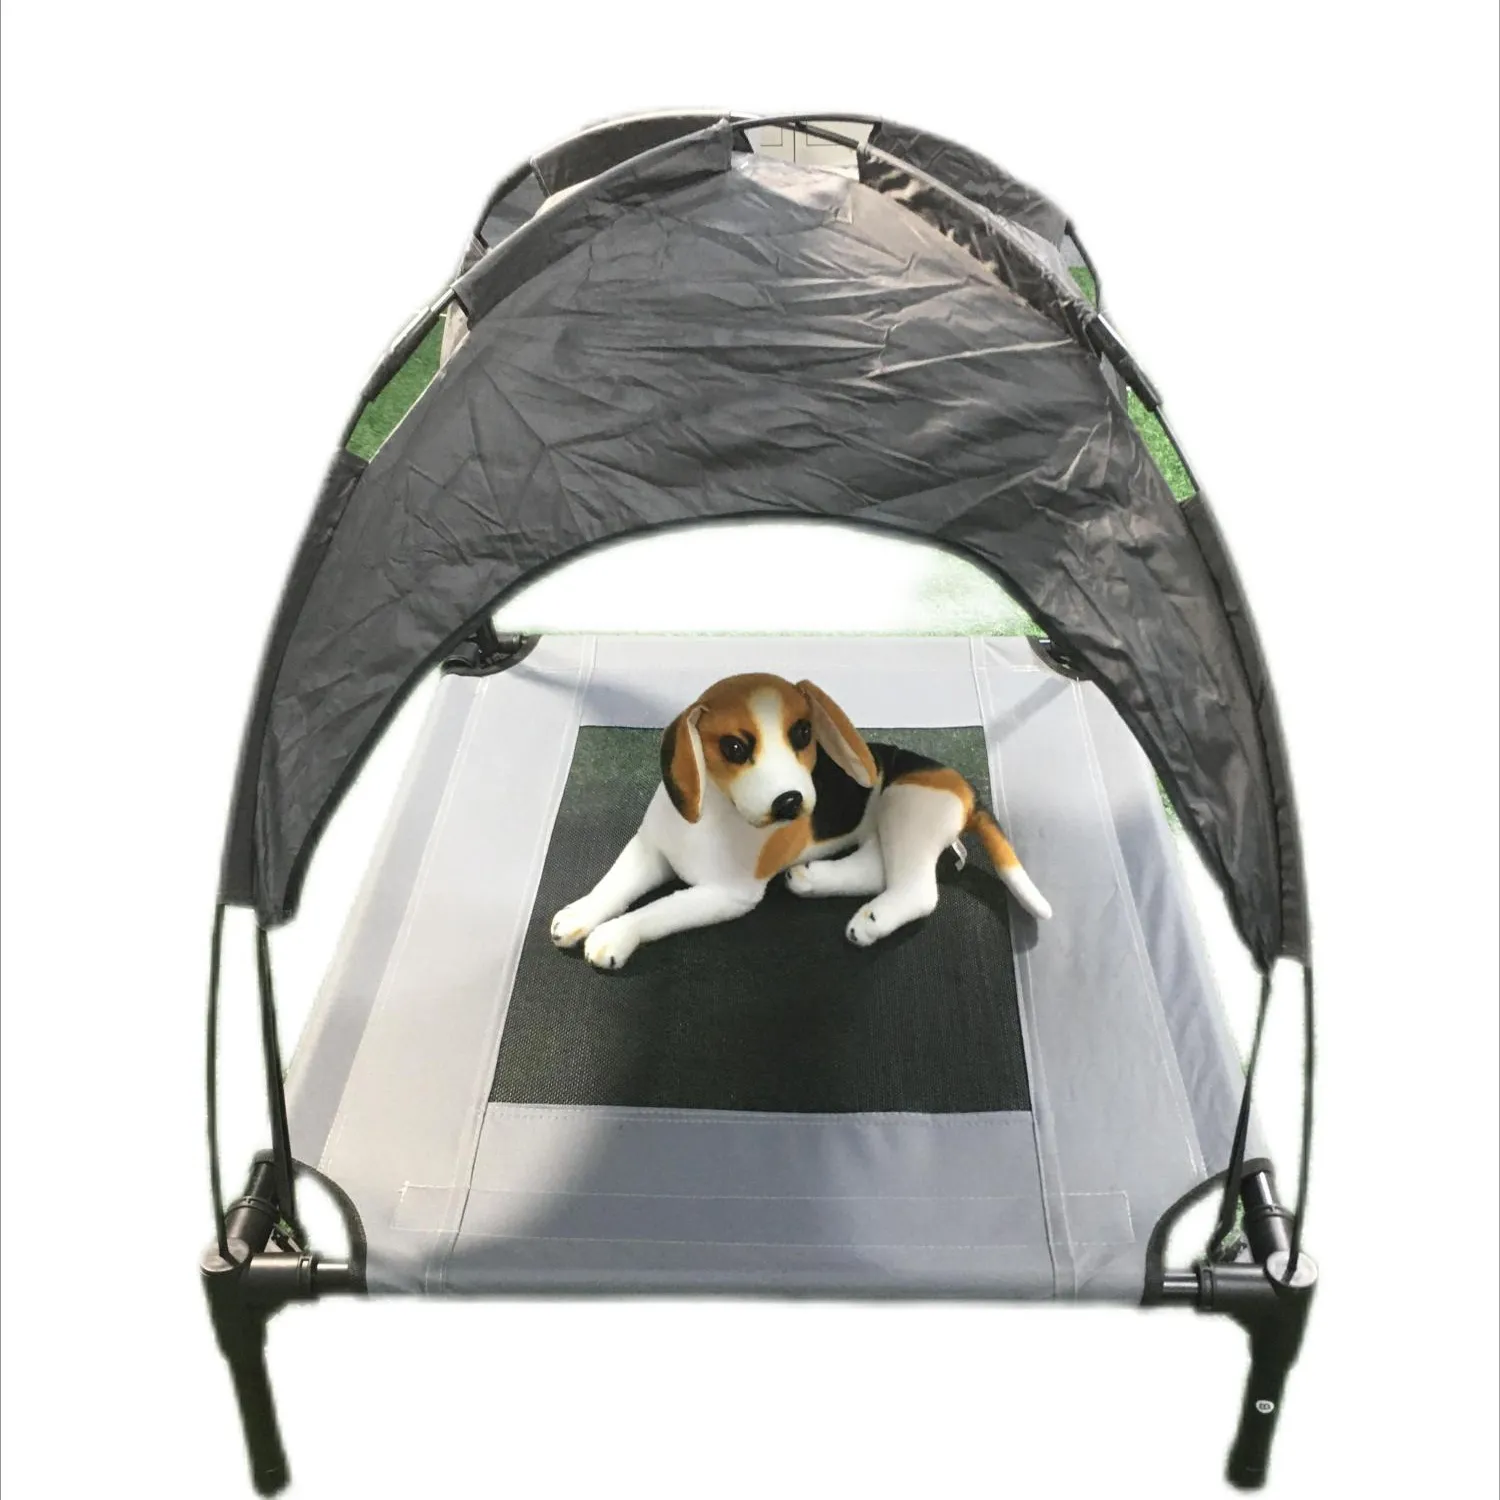 Lit pour chien surélevé avec auvent amovible surélevé chat chien lit tente intérieur extérieur lit Portable Camping plage voyage ombre